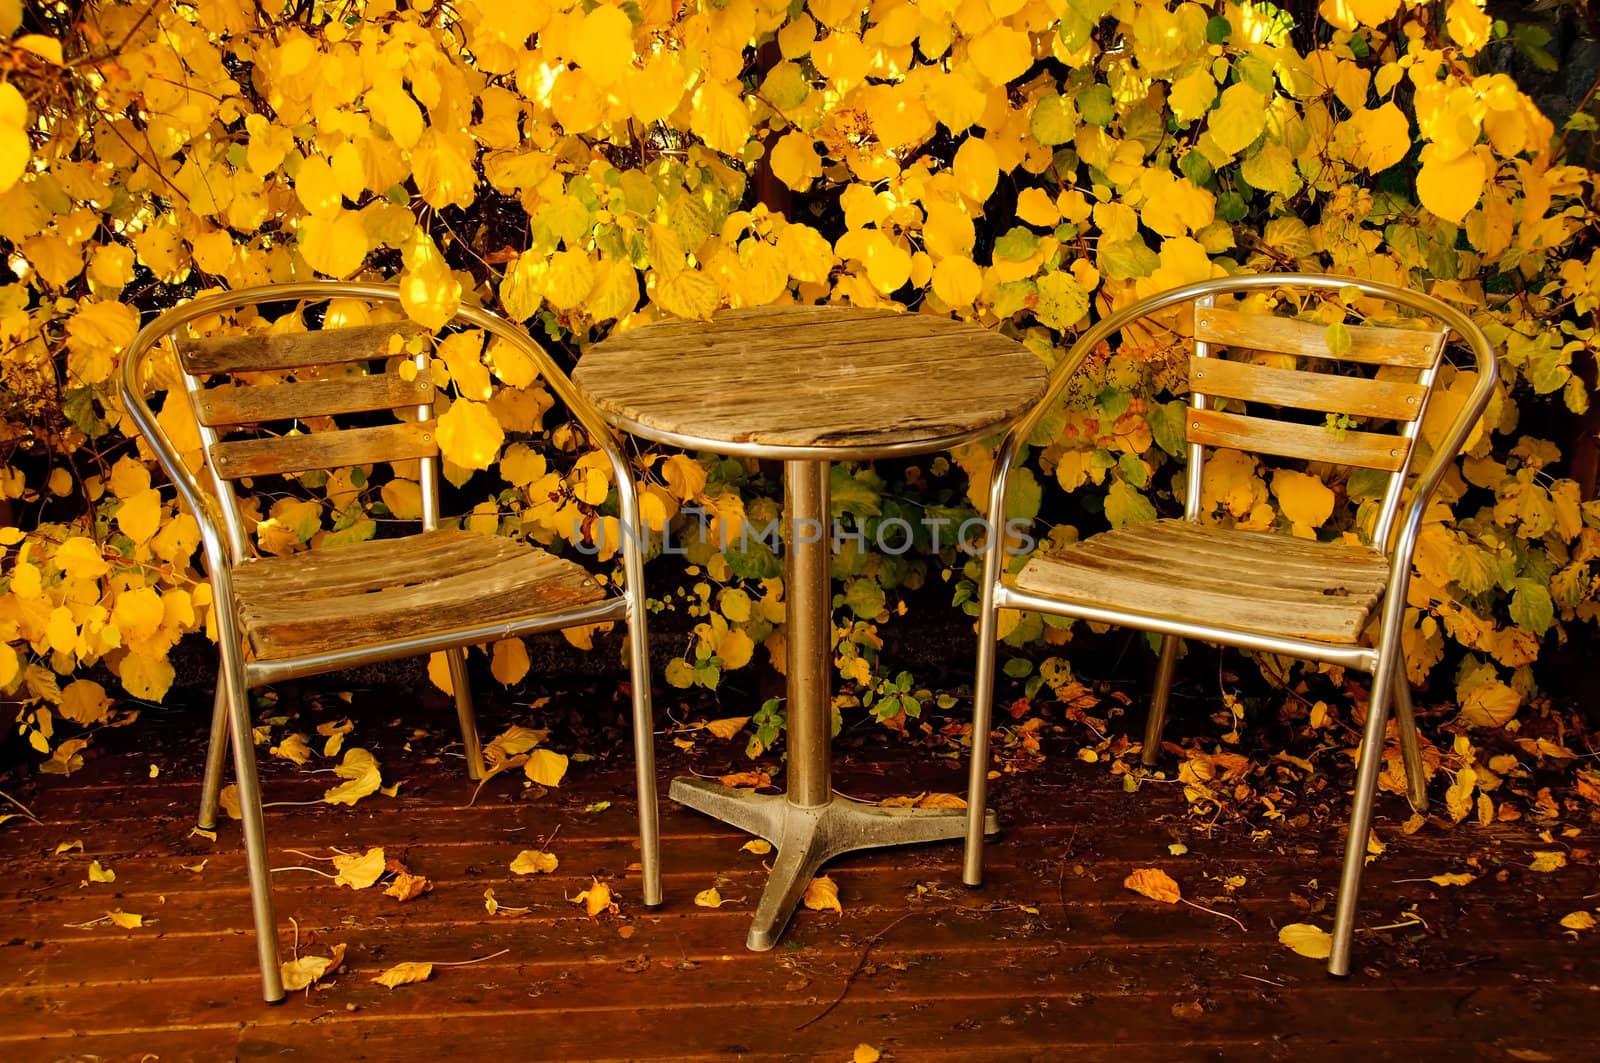 Garden furniture in autumn by GryT